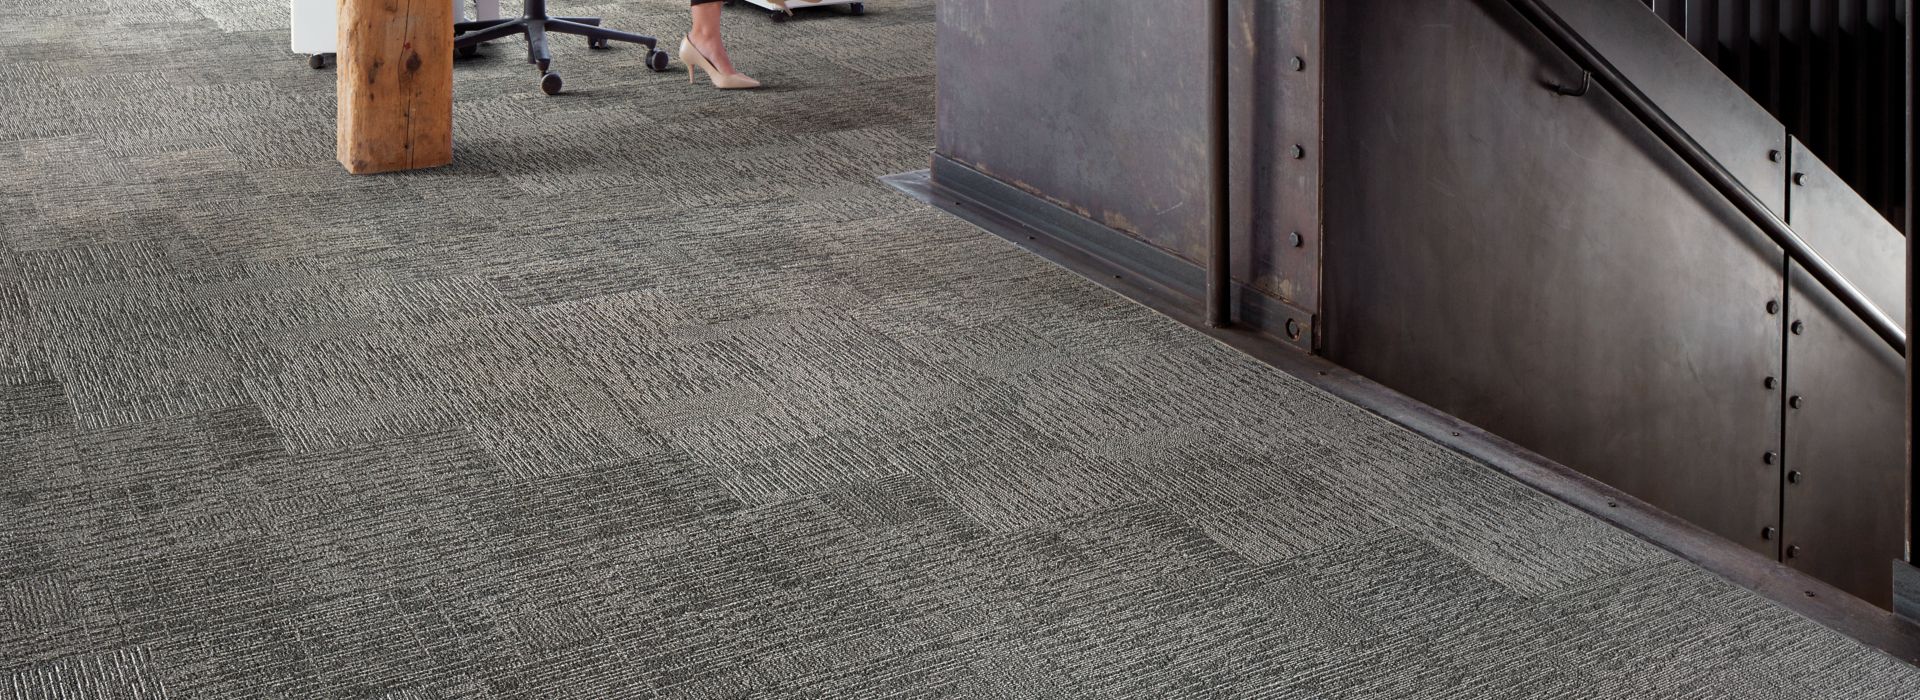 Interface Zen Stitch plank carpet tile in open office setting numéro d’image 1